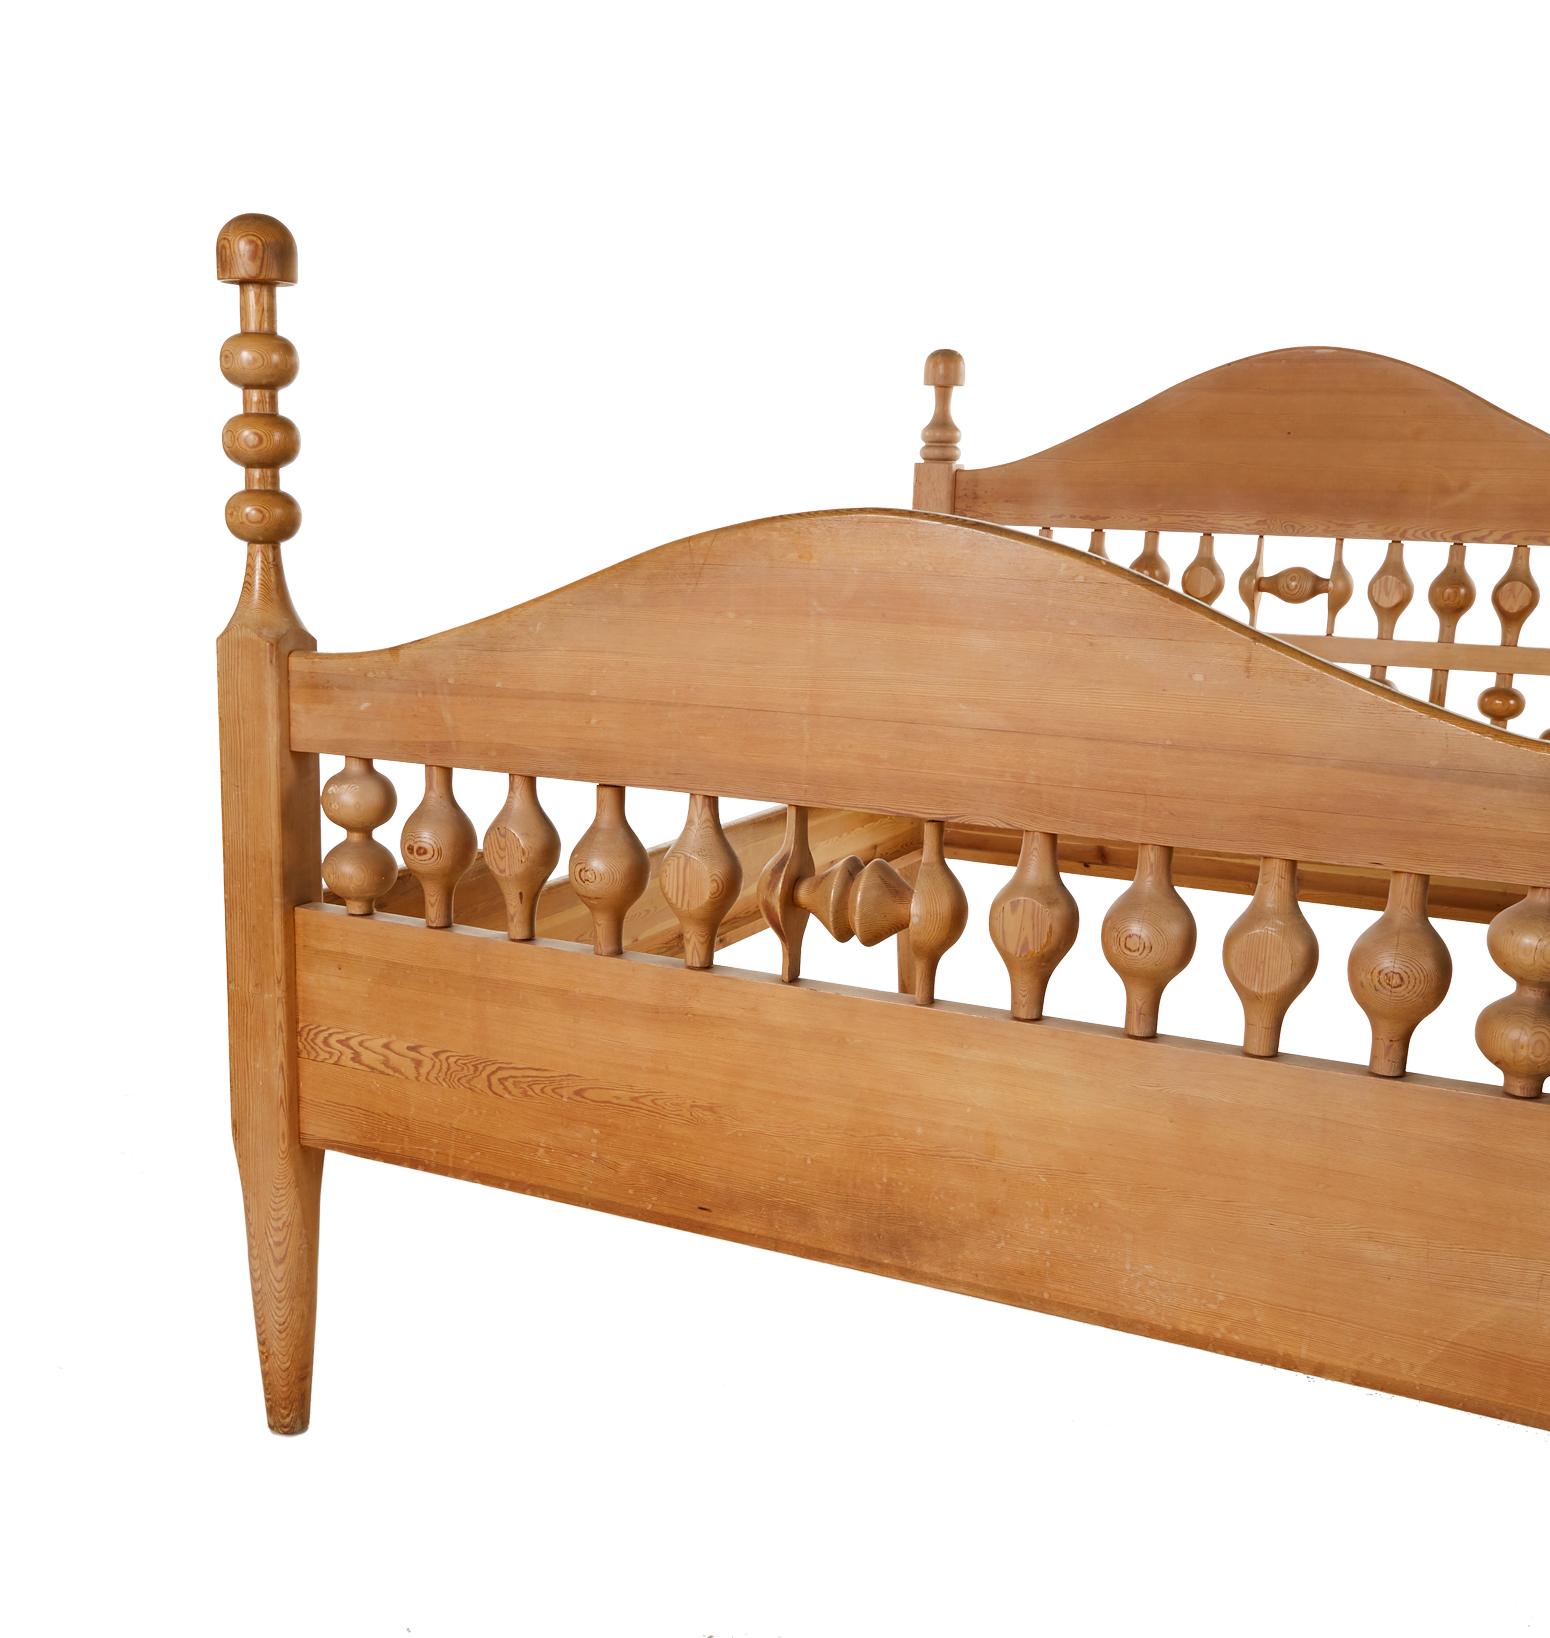 The Modern Scandinavian Bett von Erik Hoglund (Höglund), hergestellt aus massiver Kiefer für Boda Trä. Das Bett ist ein Ausdruck des Besten, was die 1970er Jahre zu bieten hatten, und ein solides Stück, das für die Ewigkeit gemacht ist.
Die